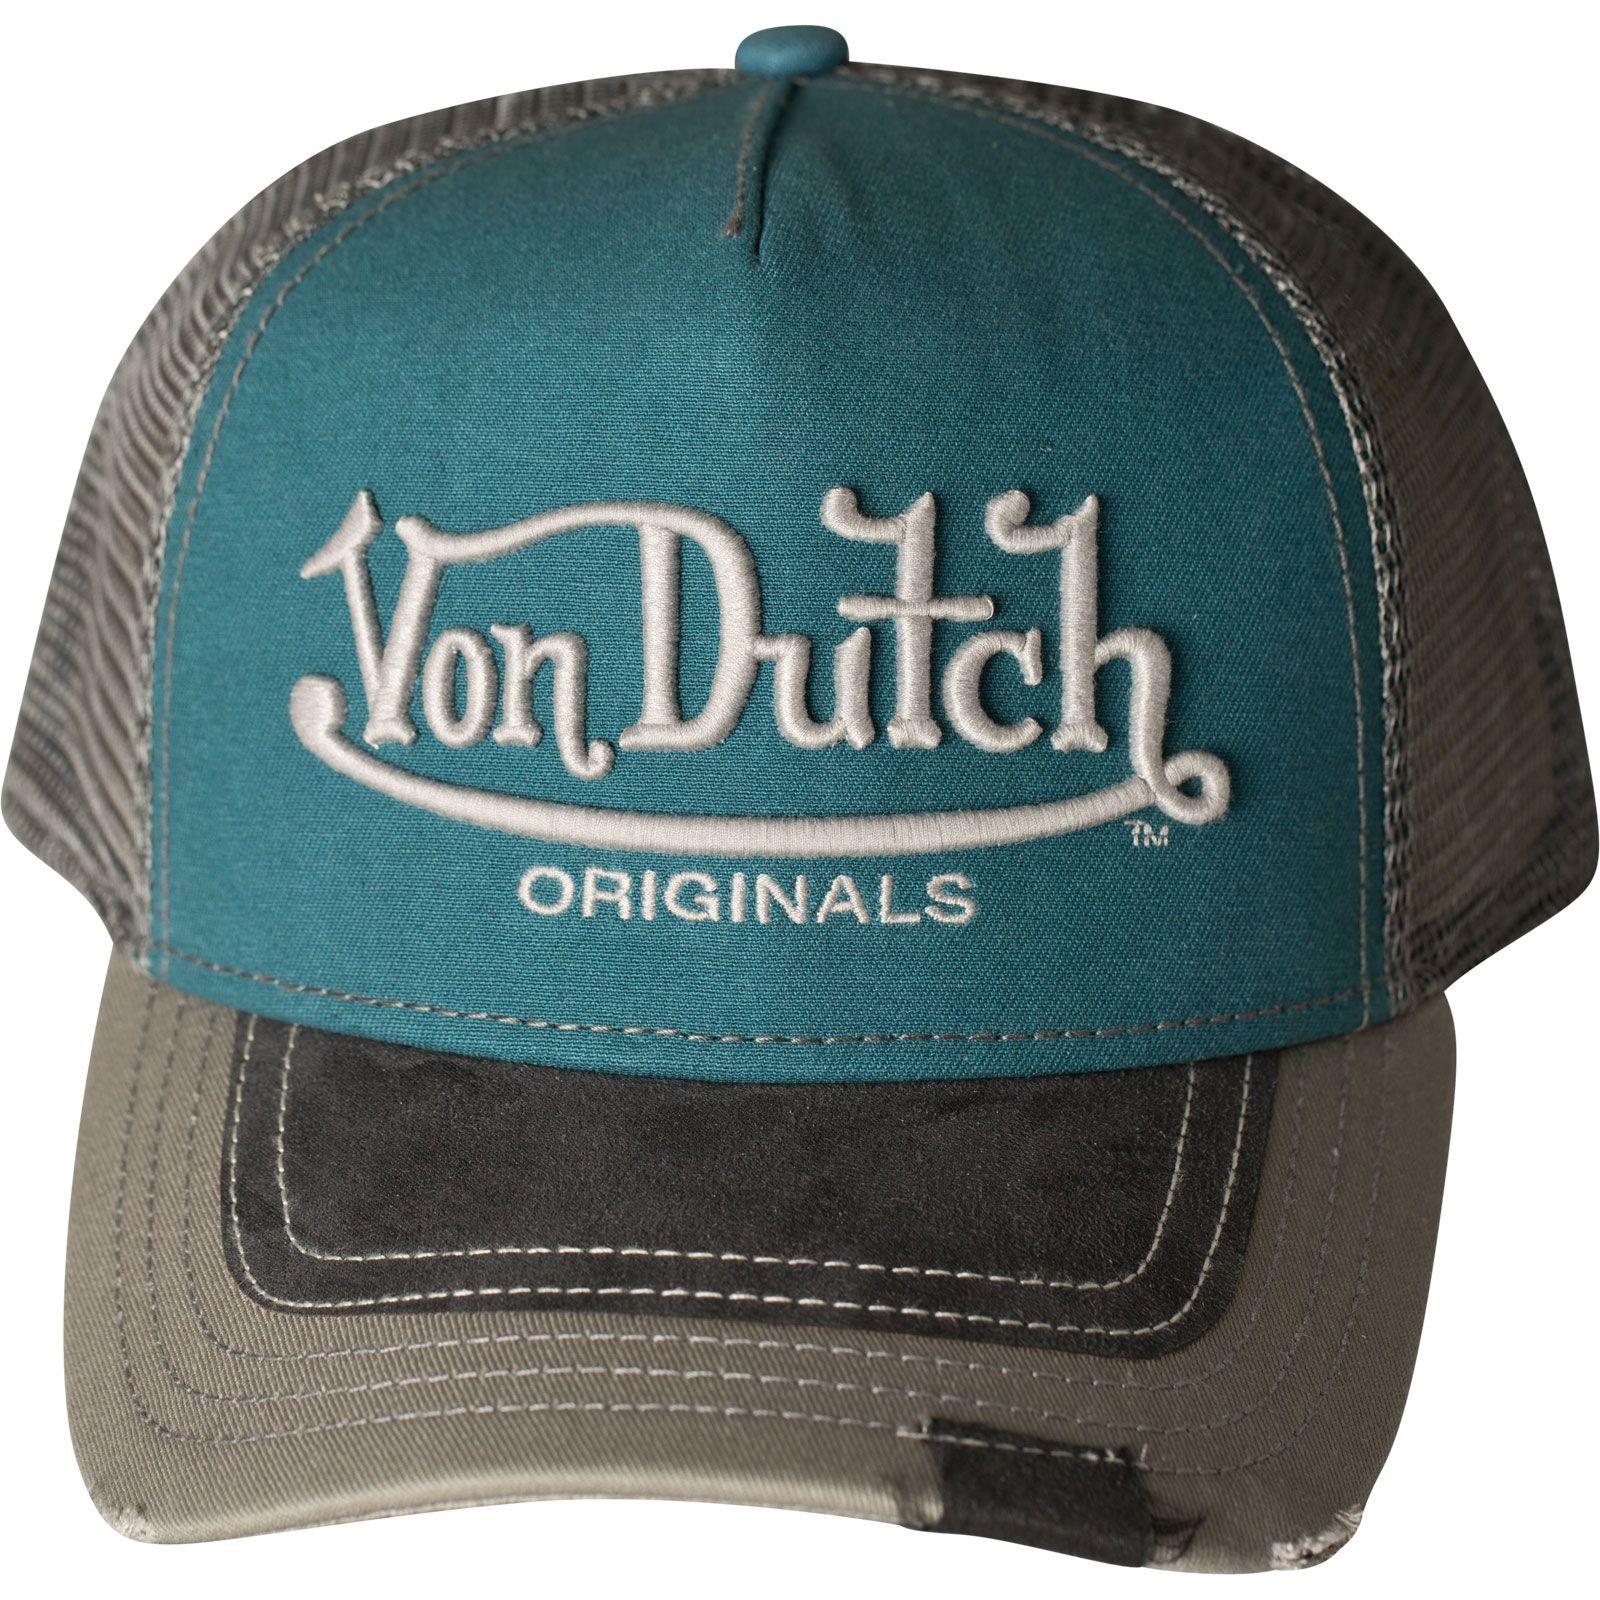 Von Logo - Logo VDHT 010 Premium Trucker Cap by Von Dutch Cap with increased 3D